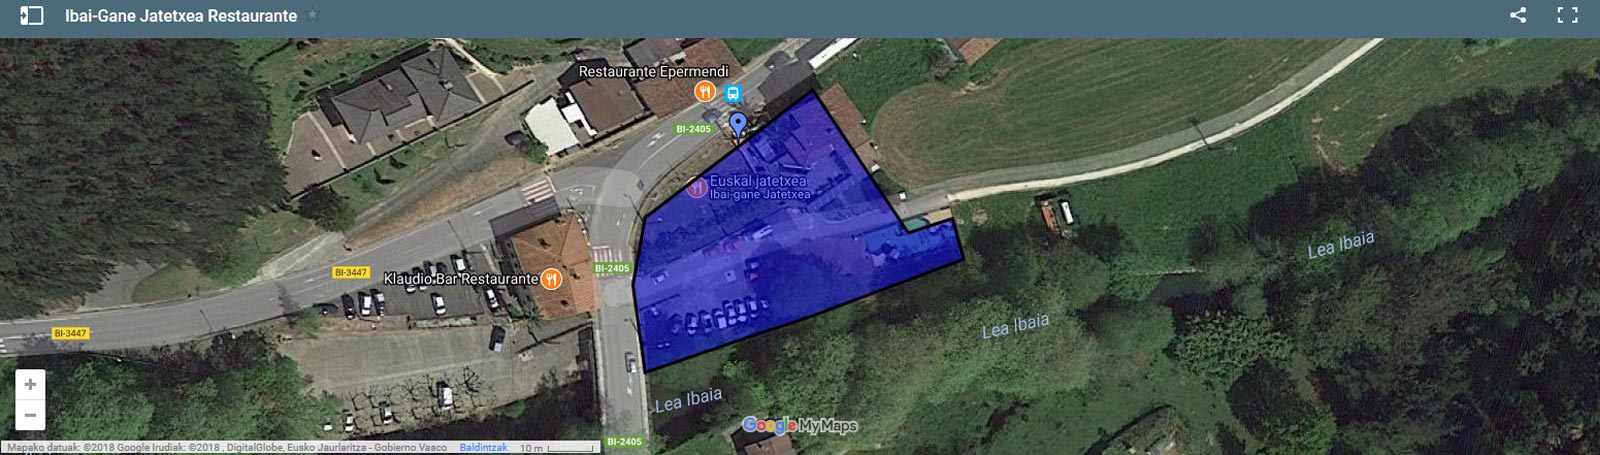 Localización del restaurante Ibaigane en google maps